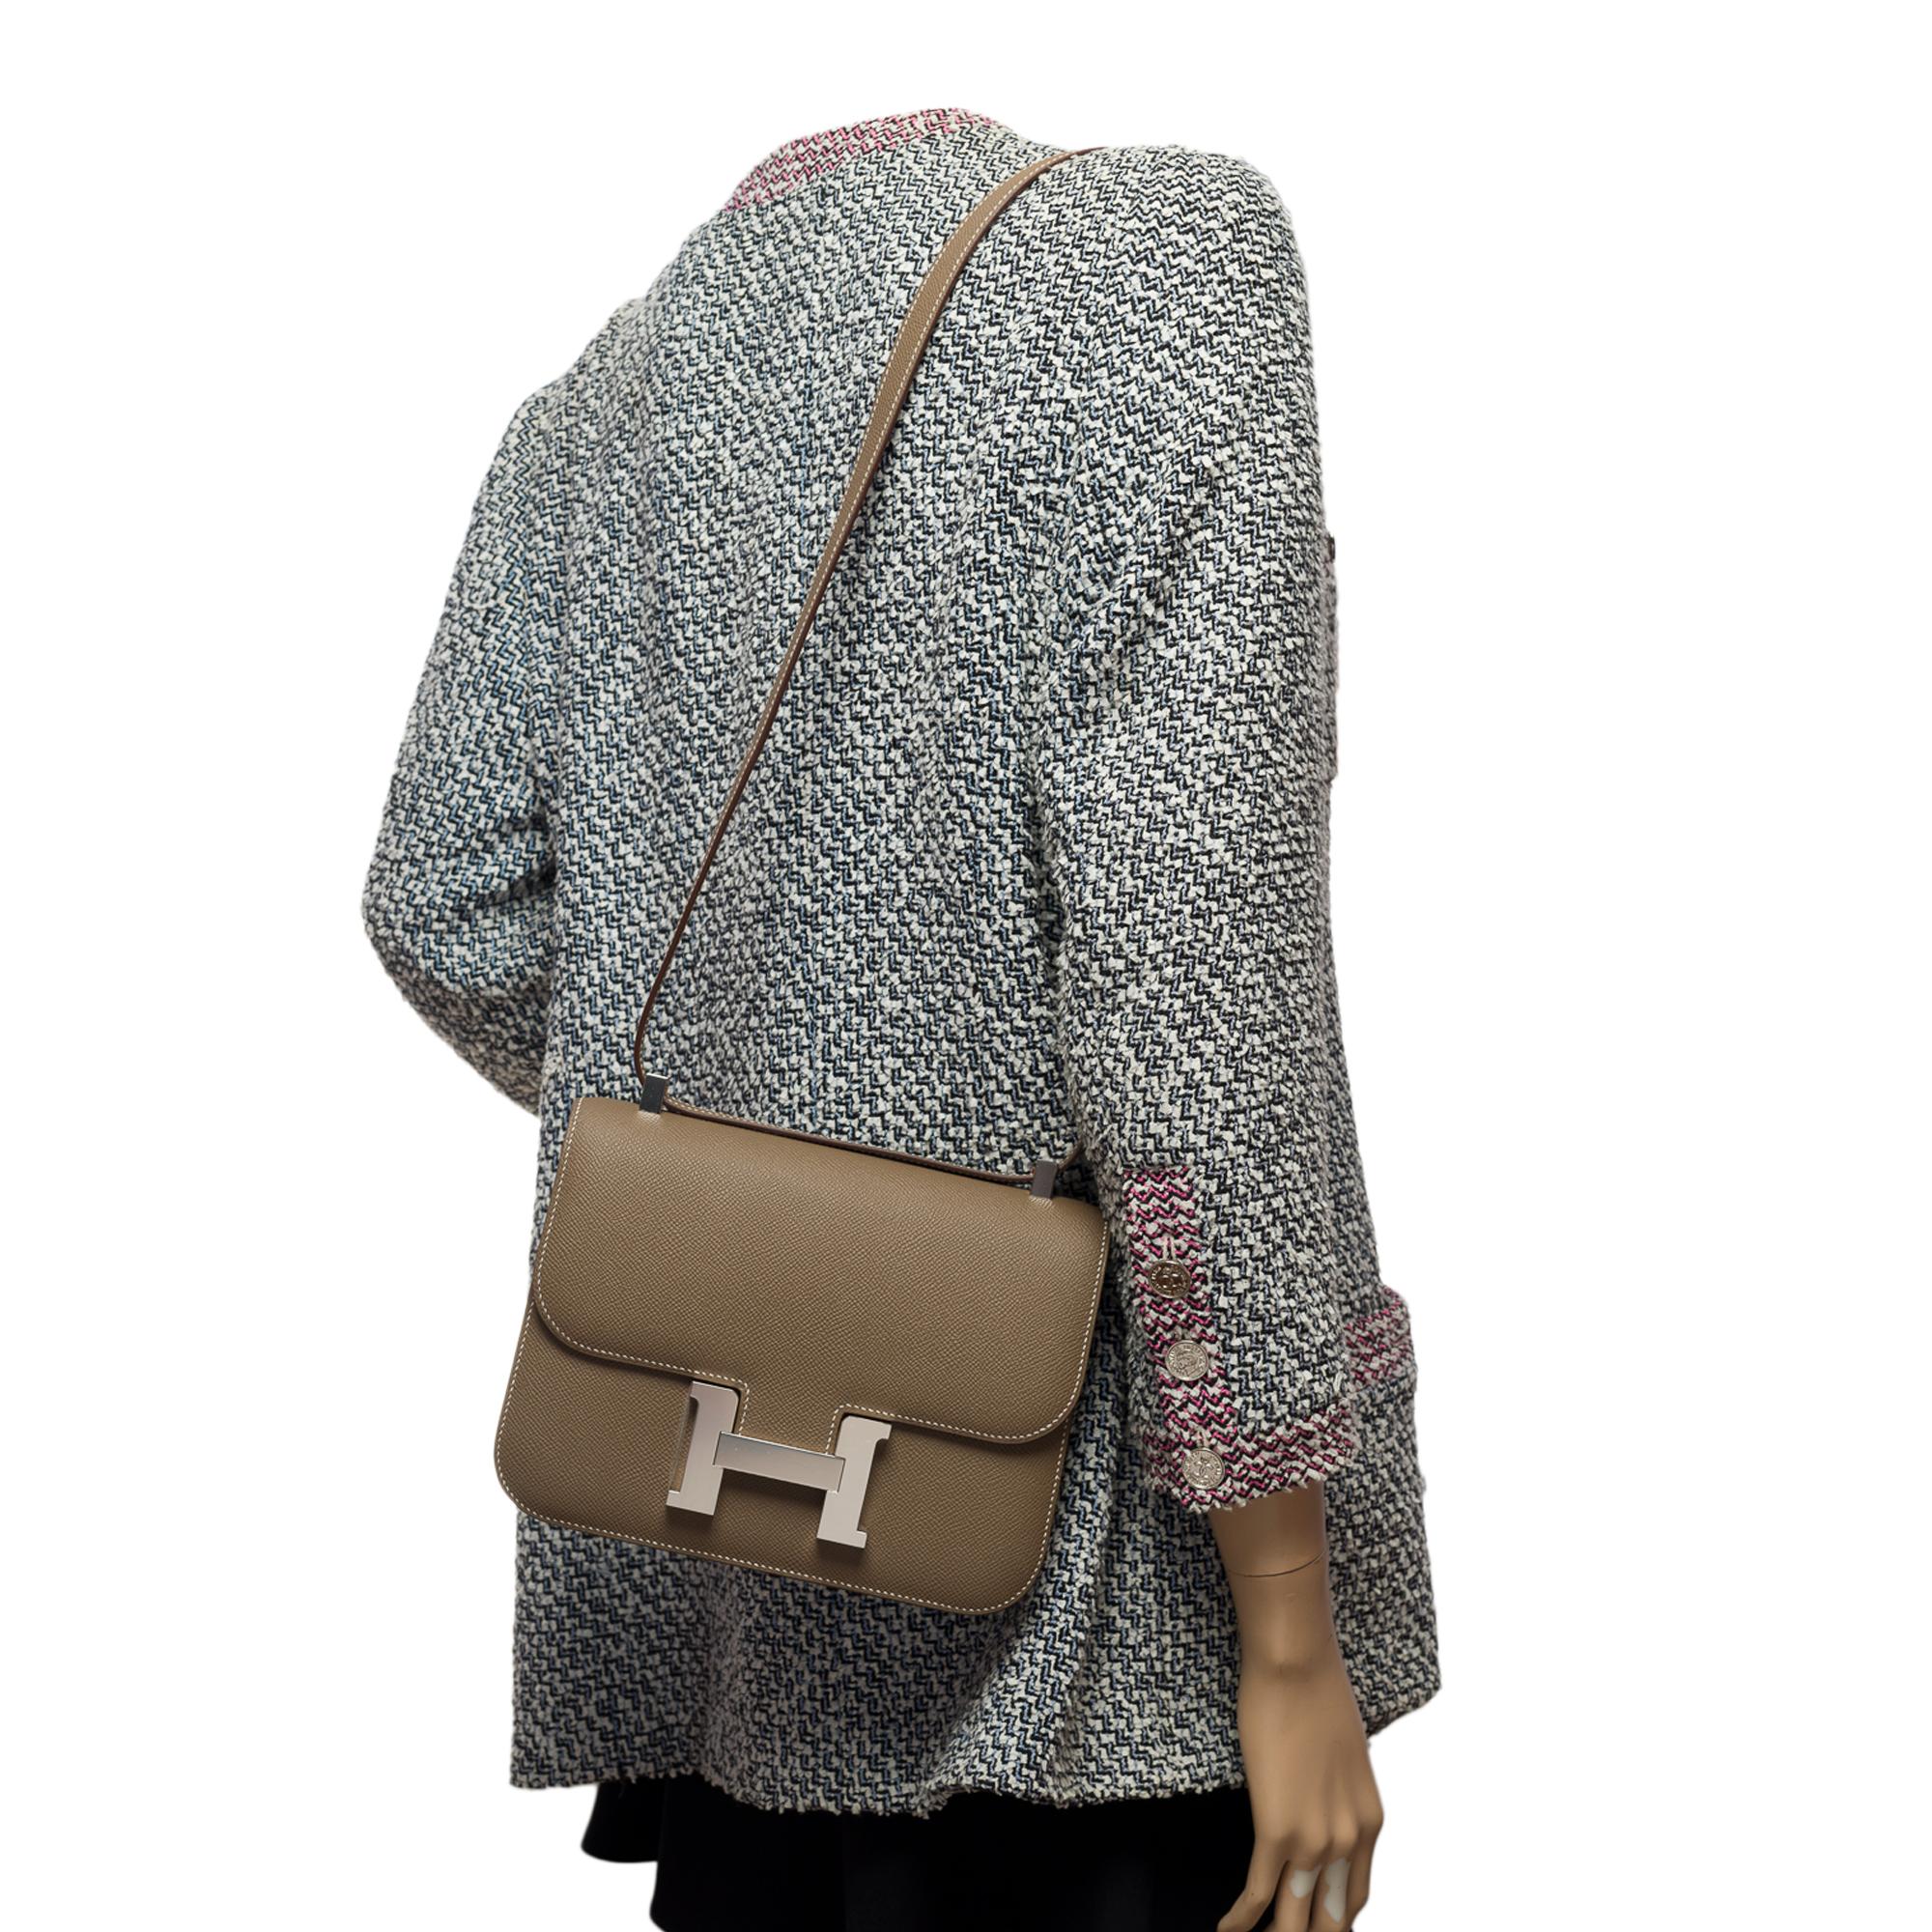 Brand New Hermès Constance 24 shoulder bag in etoupe Epsom leather, SHW 5